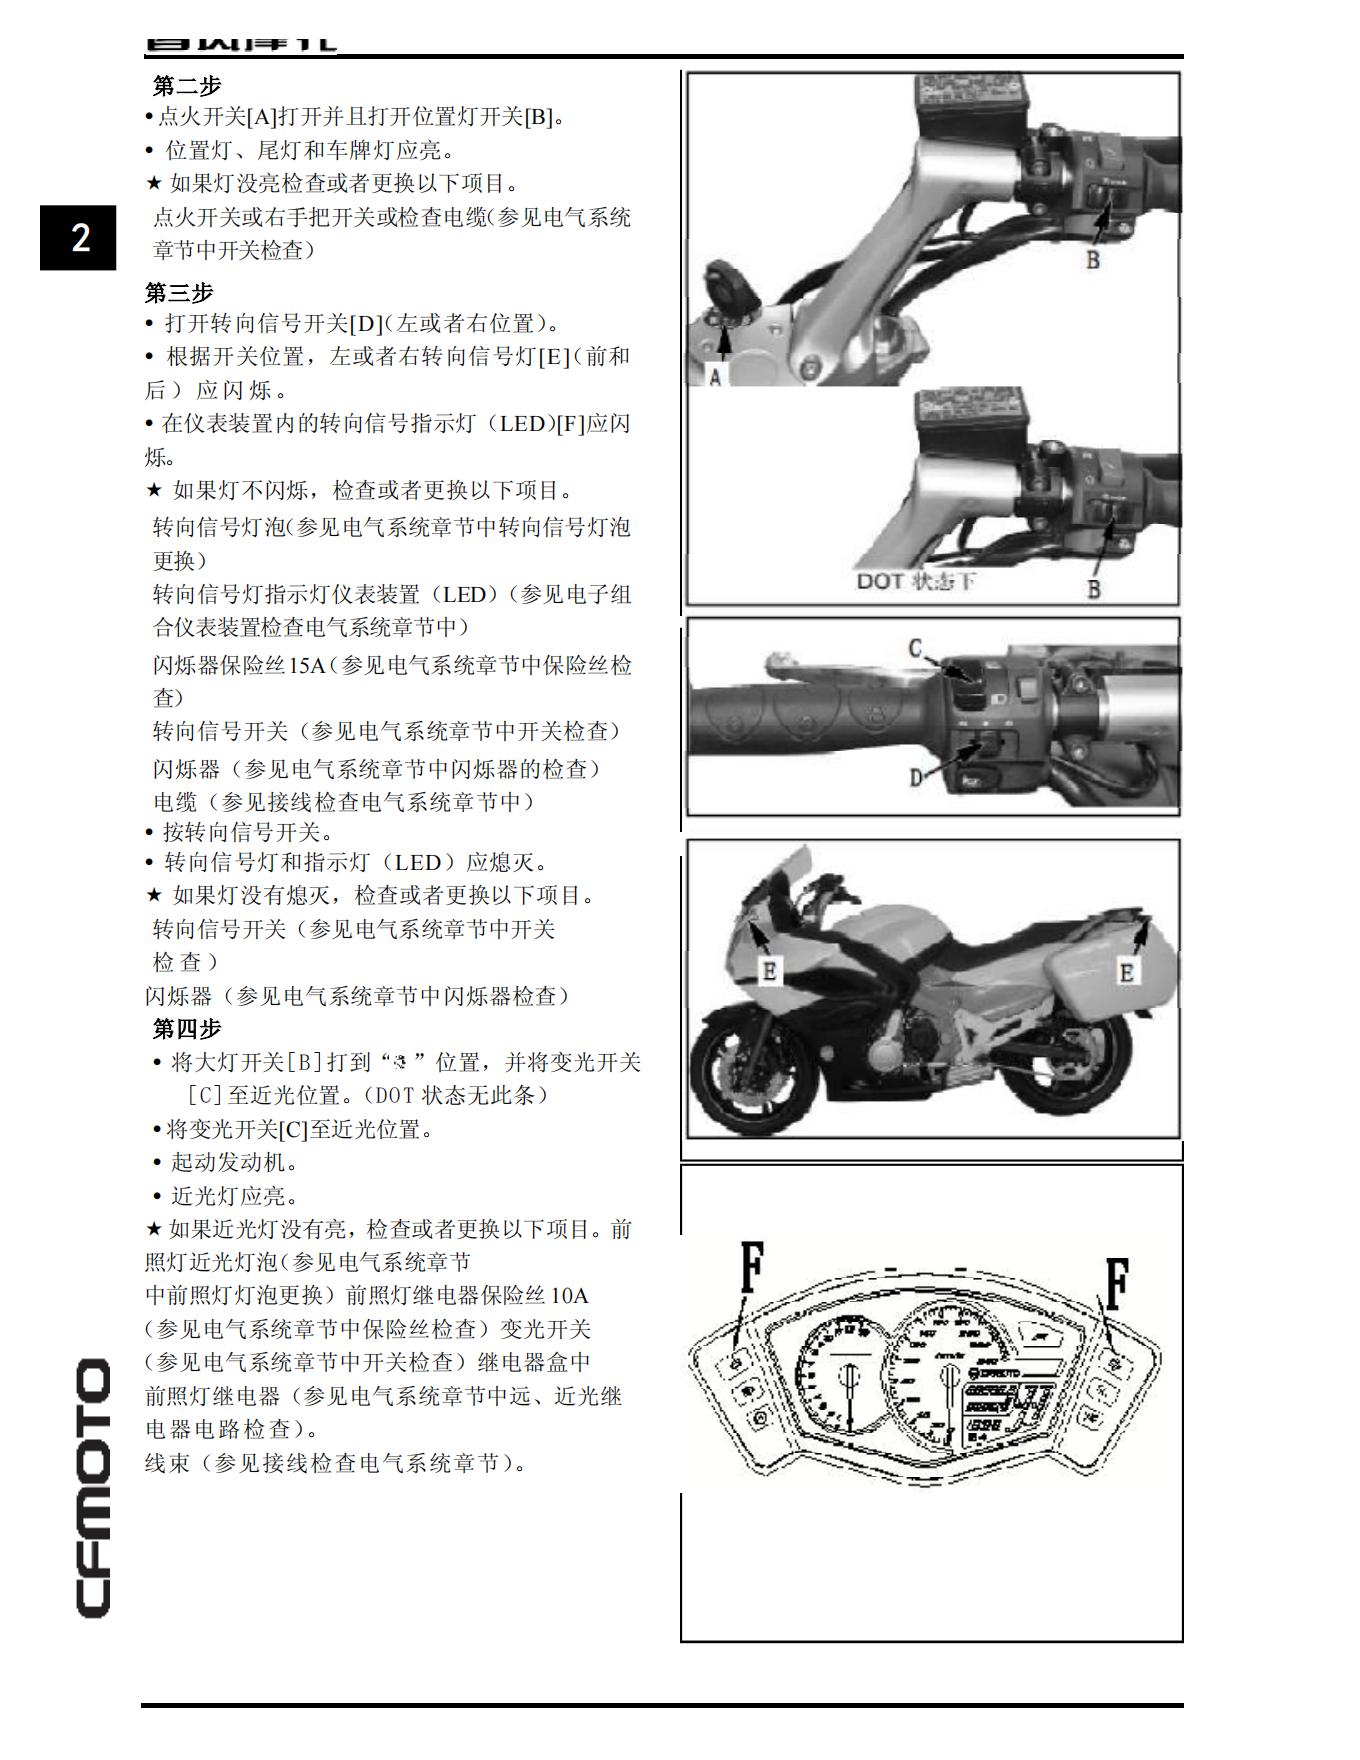 中文原版2015春风国宾650维修手册CF650-2 CF650J (ABS)春风650NK650cfmoto插图3